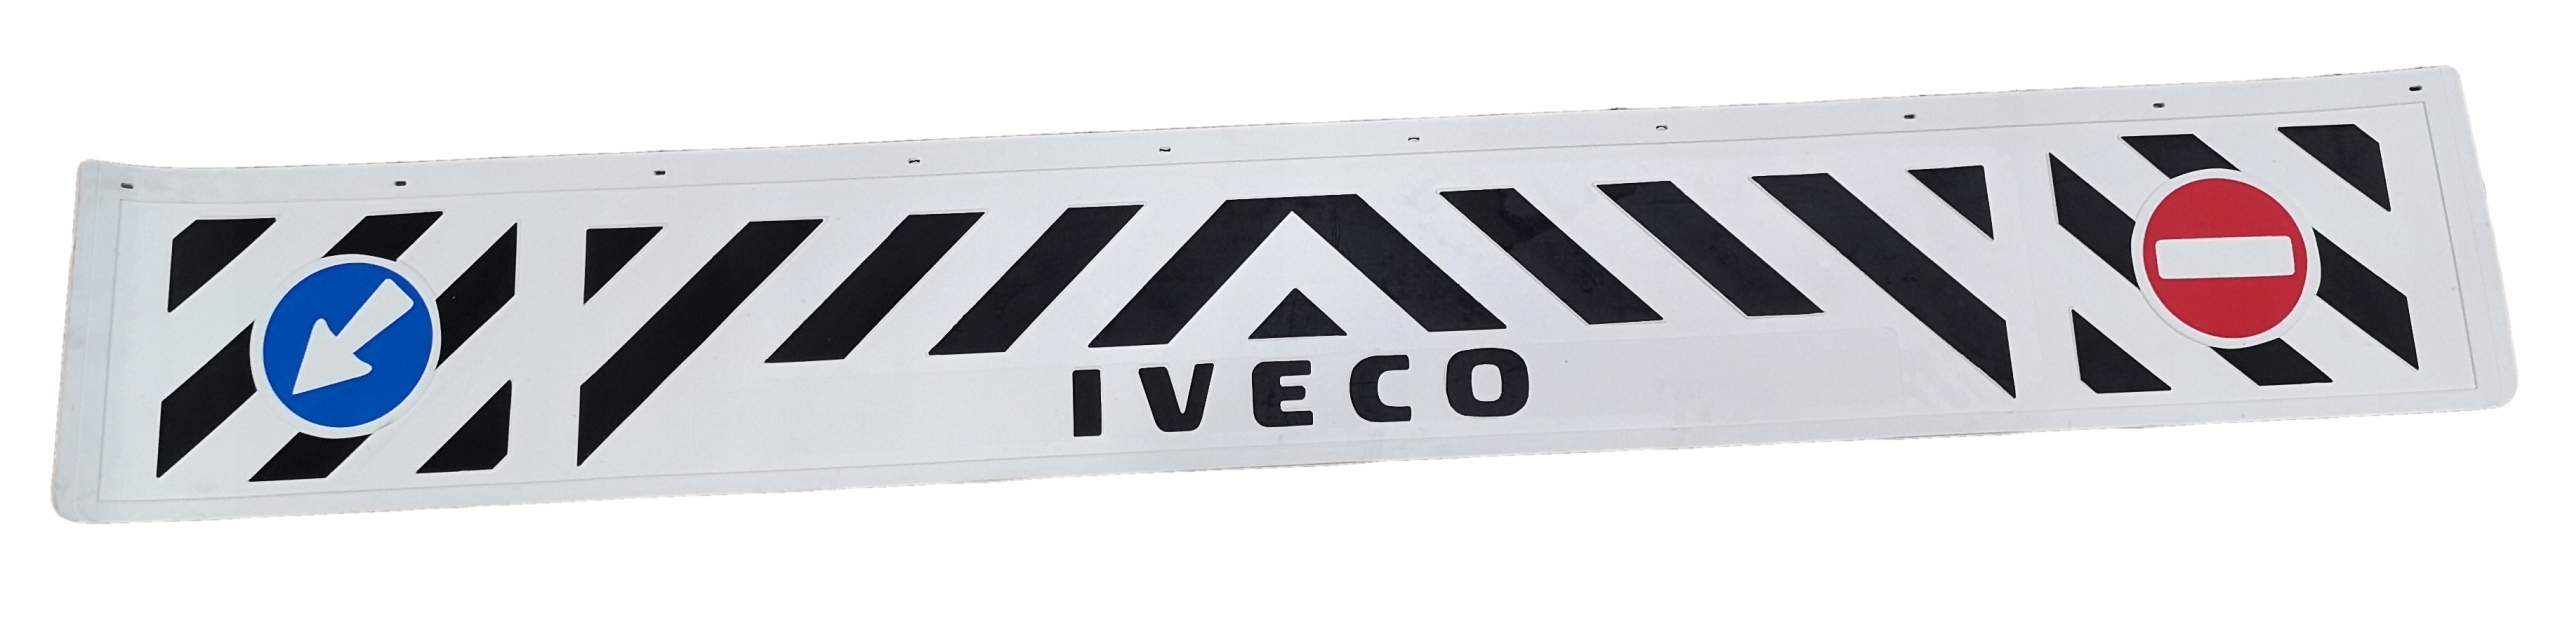 Брызговик полуприцепа IVECO белый штампованный